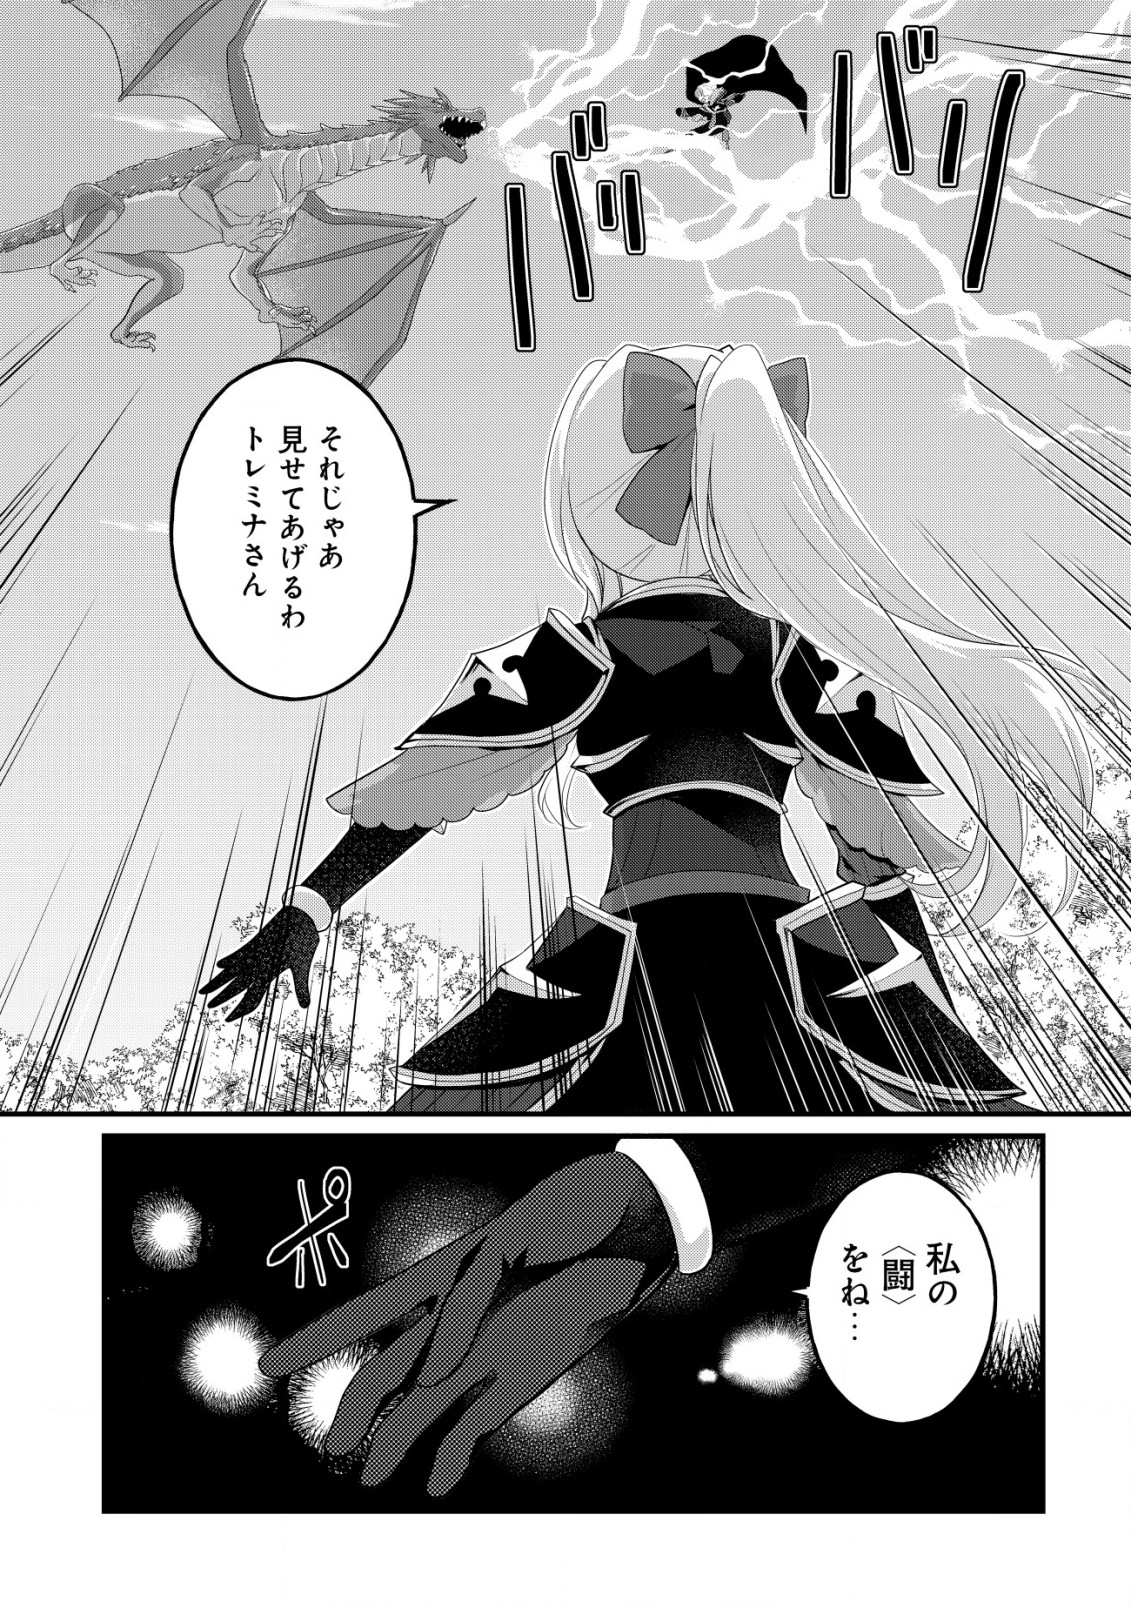 Jagaimo Nouka no Muramusume, Kenshin to Utawareru Made. - Chapter 13 - Page 14